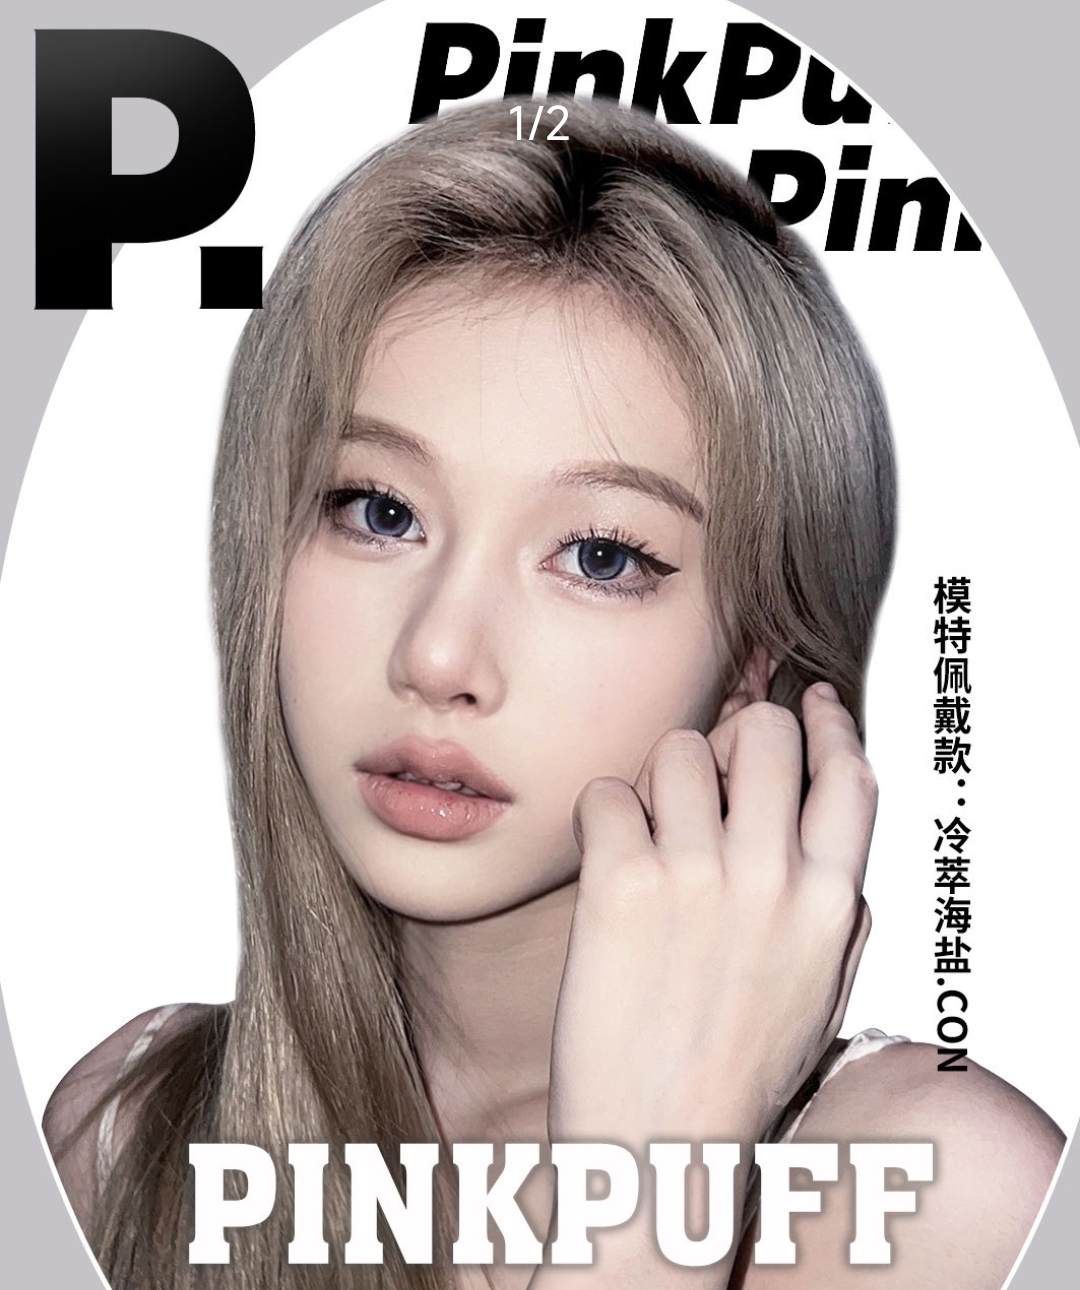 【新品牌】PinkPuff 幼感高级融瞳新势力 这个初春立马遇见心动